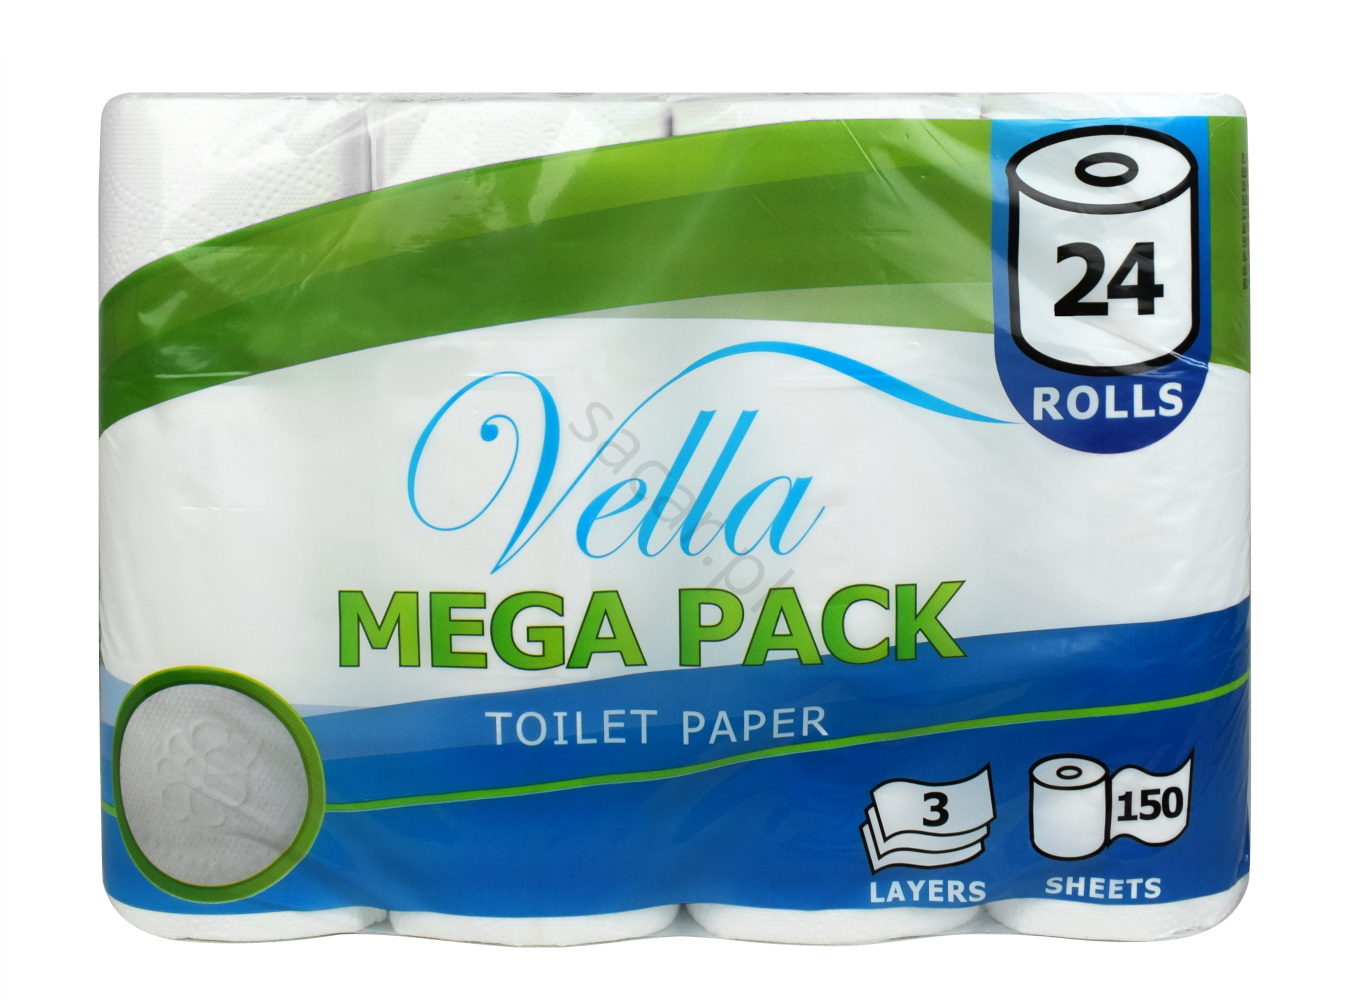 Trzywarstwowy papier toaletowy Mega Pack 24 rolki